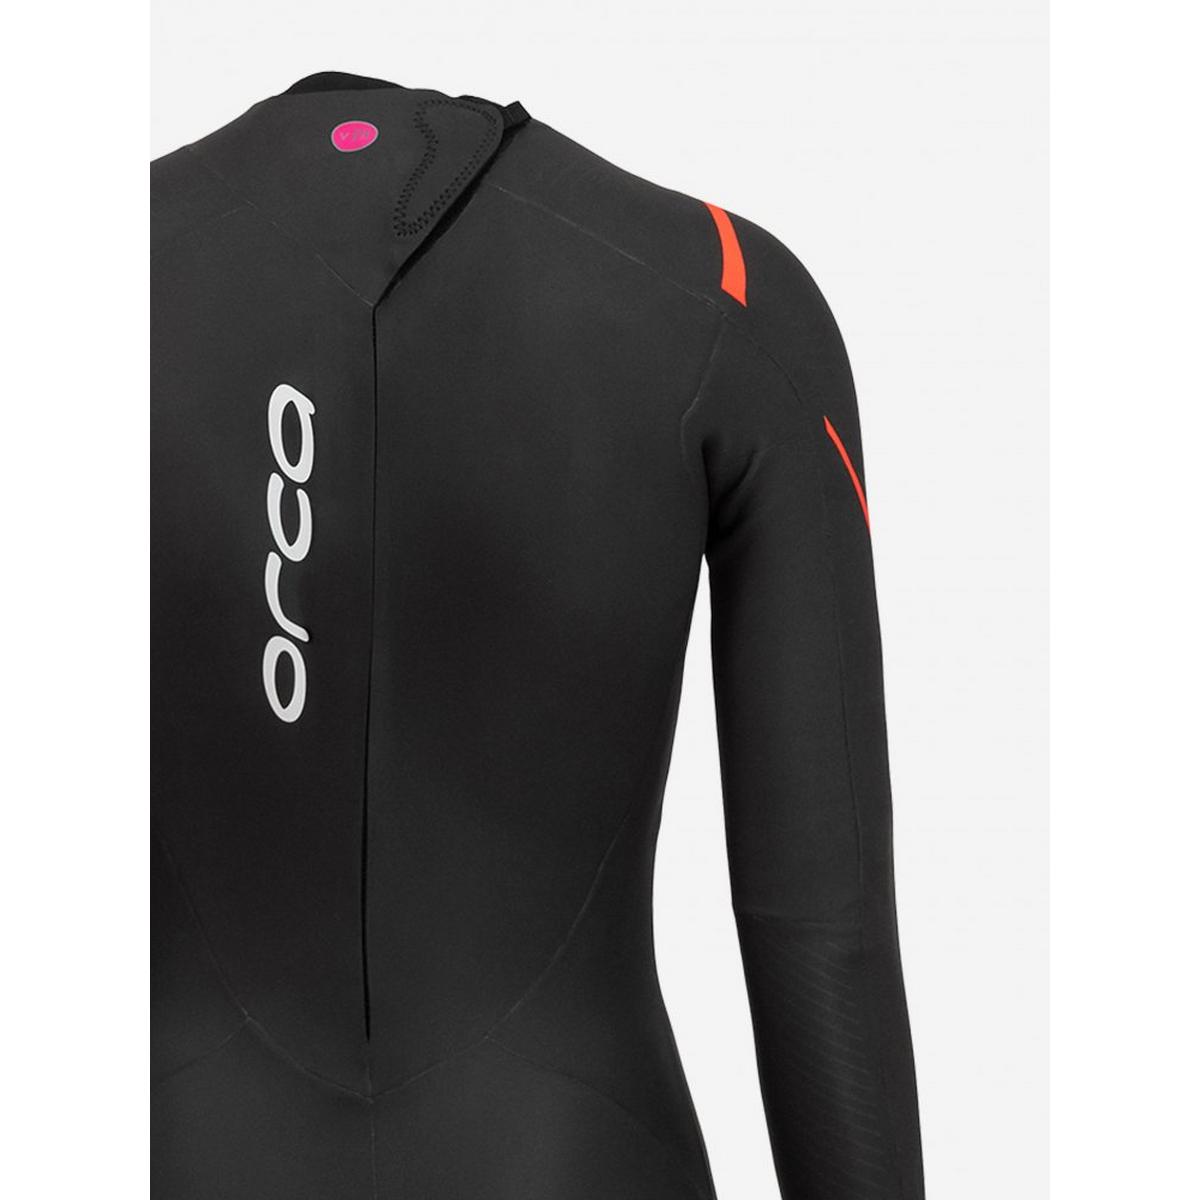 Orca Women's Openwater Core TRN Wetsuit - Black